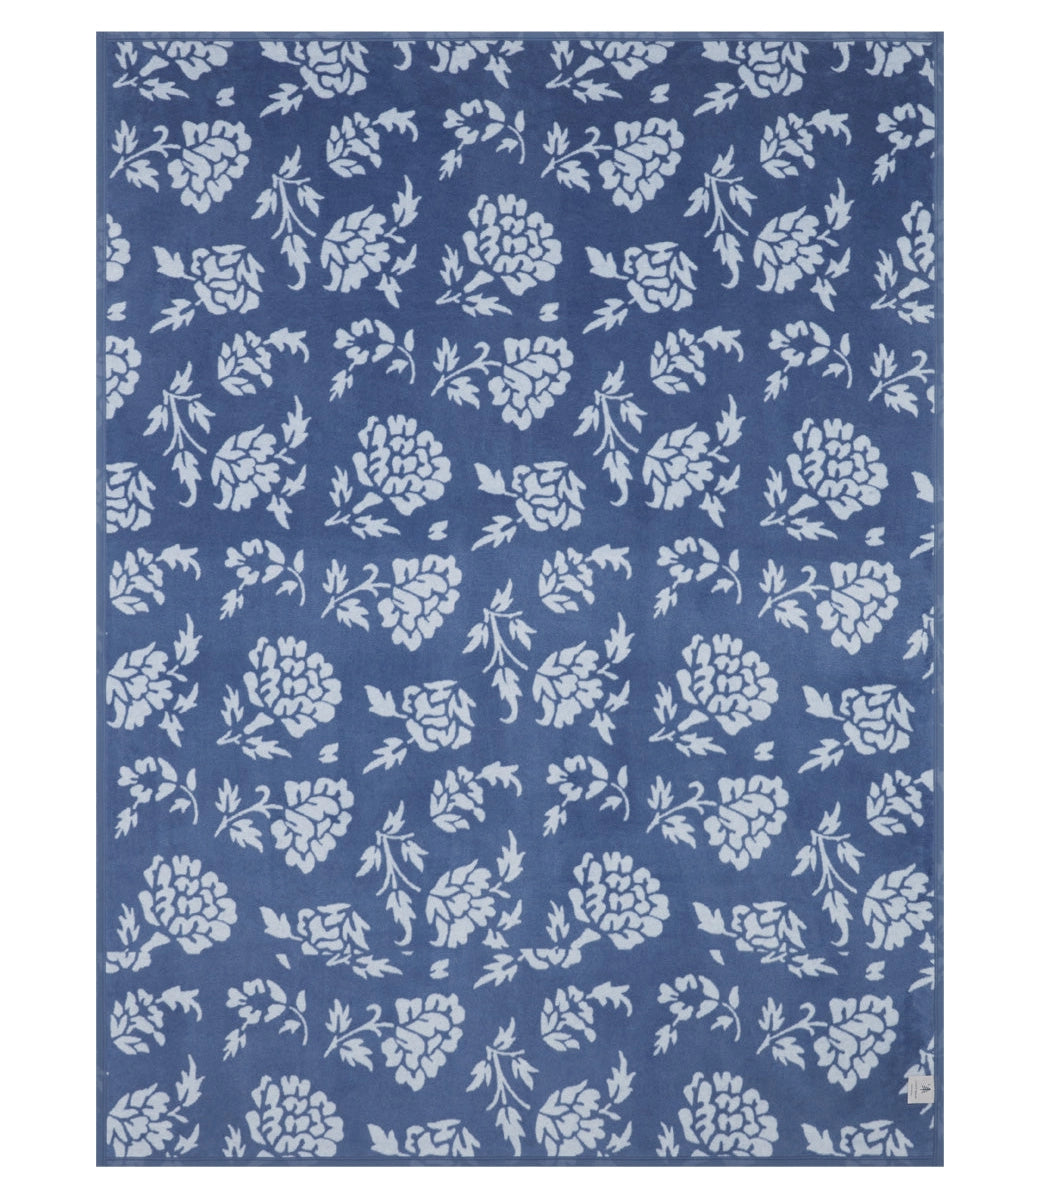 ChappyWrap Bouquet Block Print Blanket - Original Size